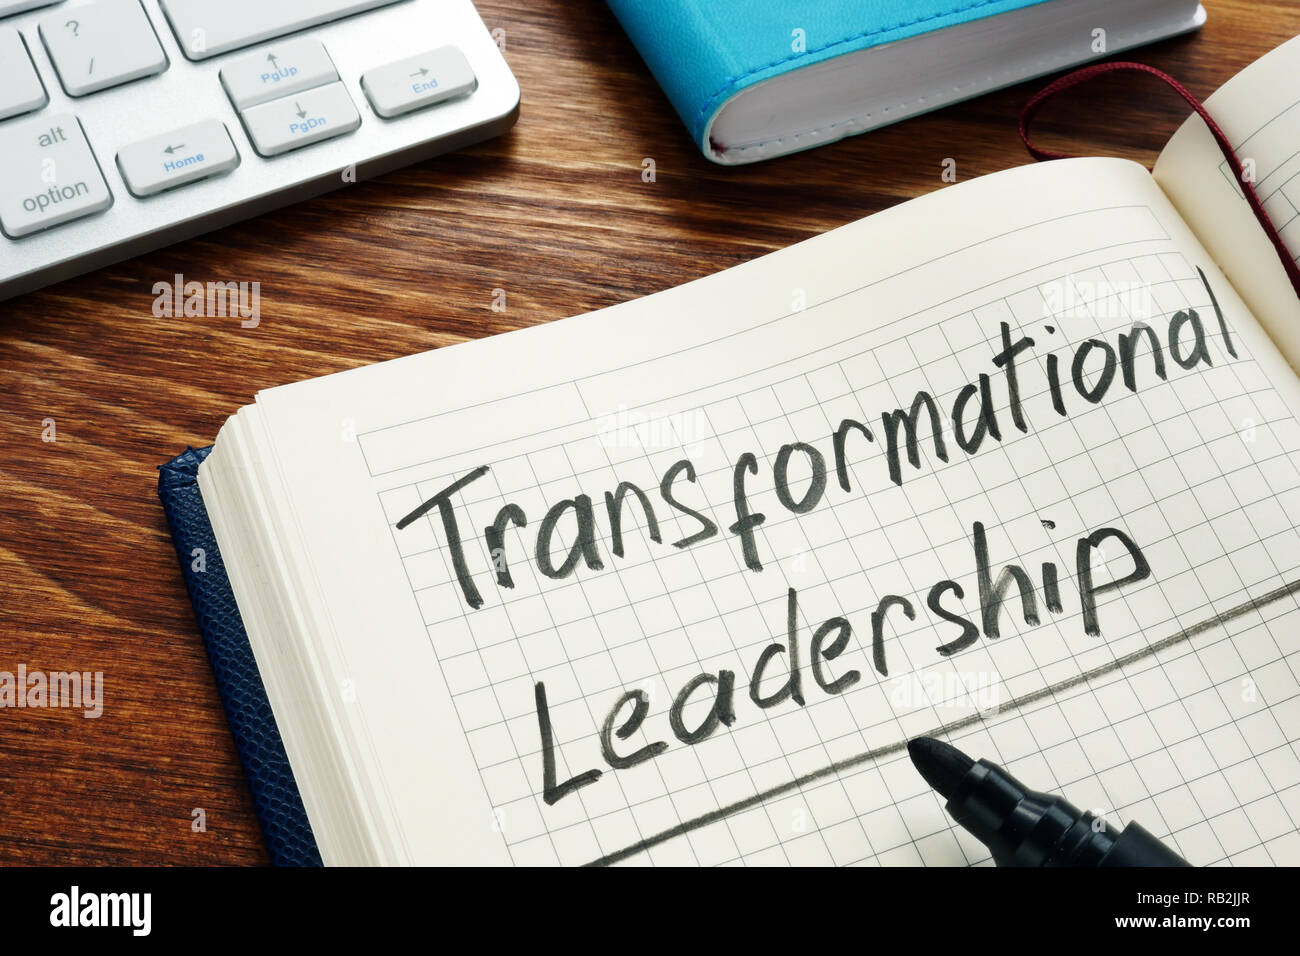 Transformational leadership handschriftlich in einem Notizblock. Stockfoto